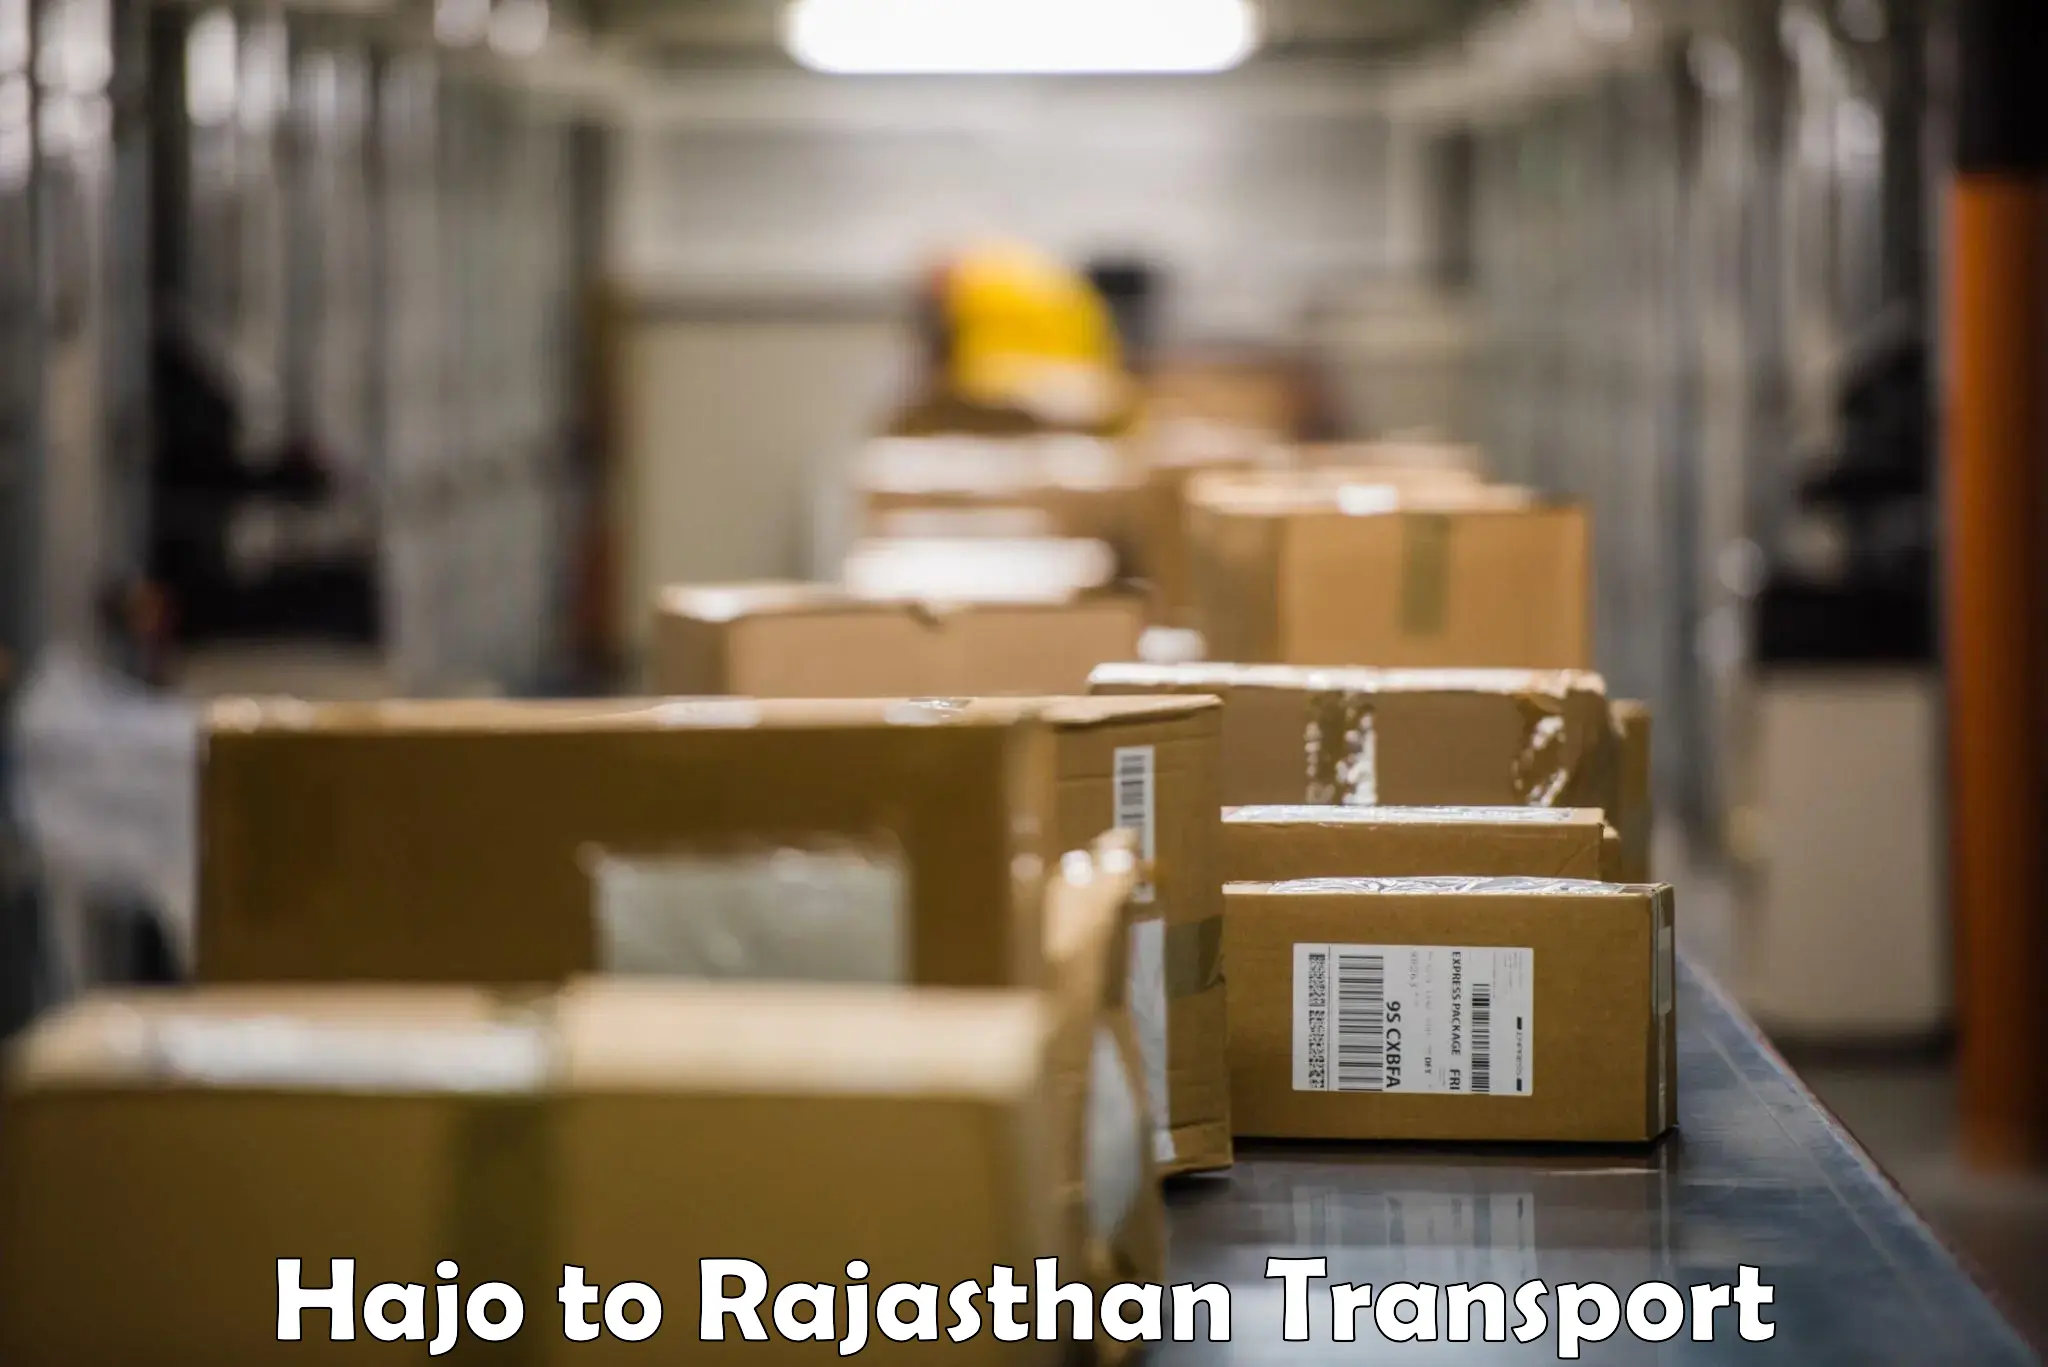 Furniture transport service Hajo to Rajasthan